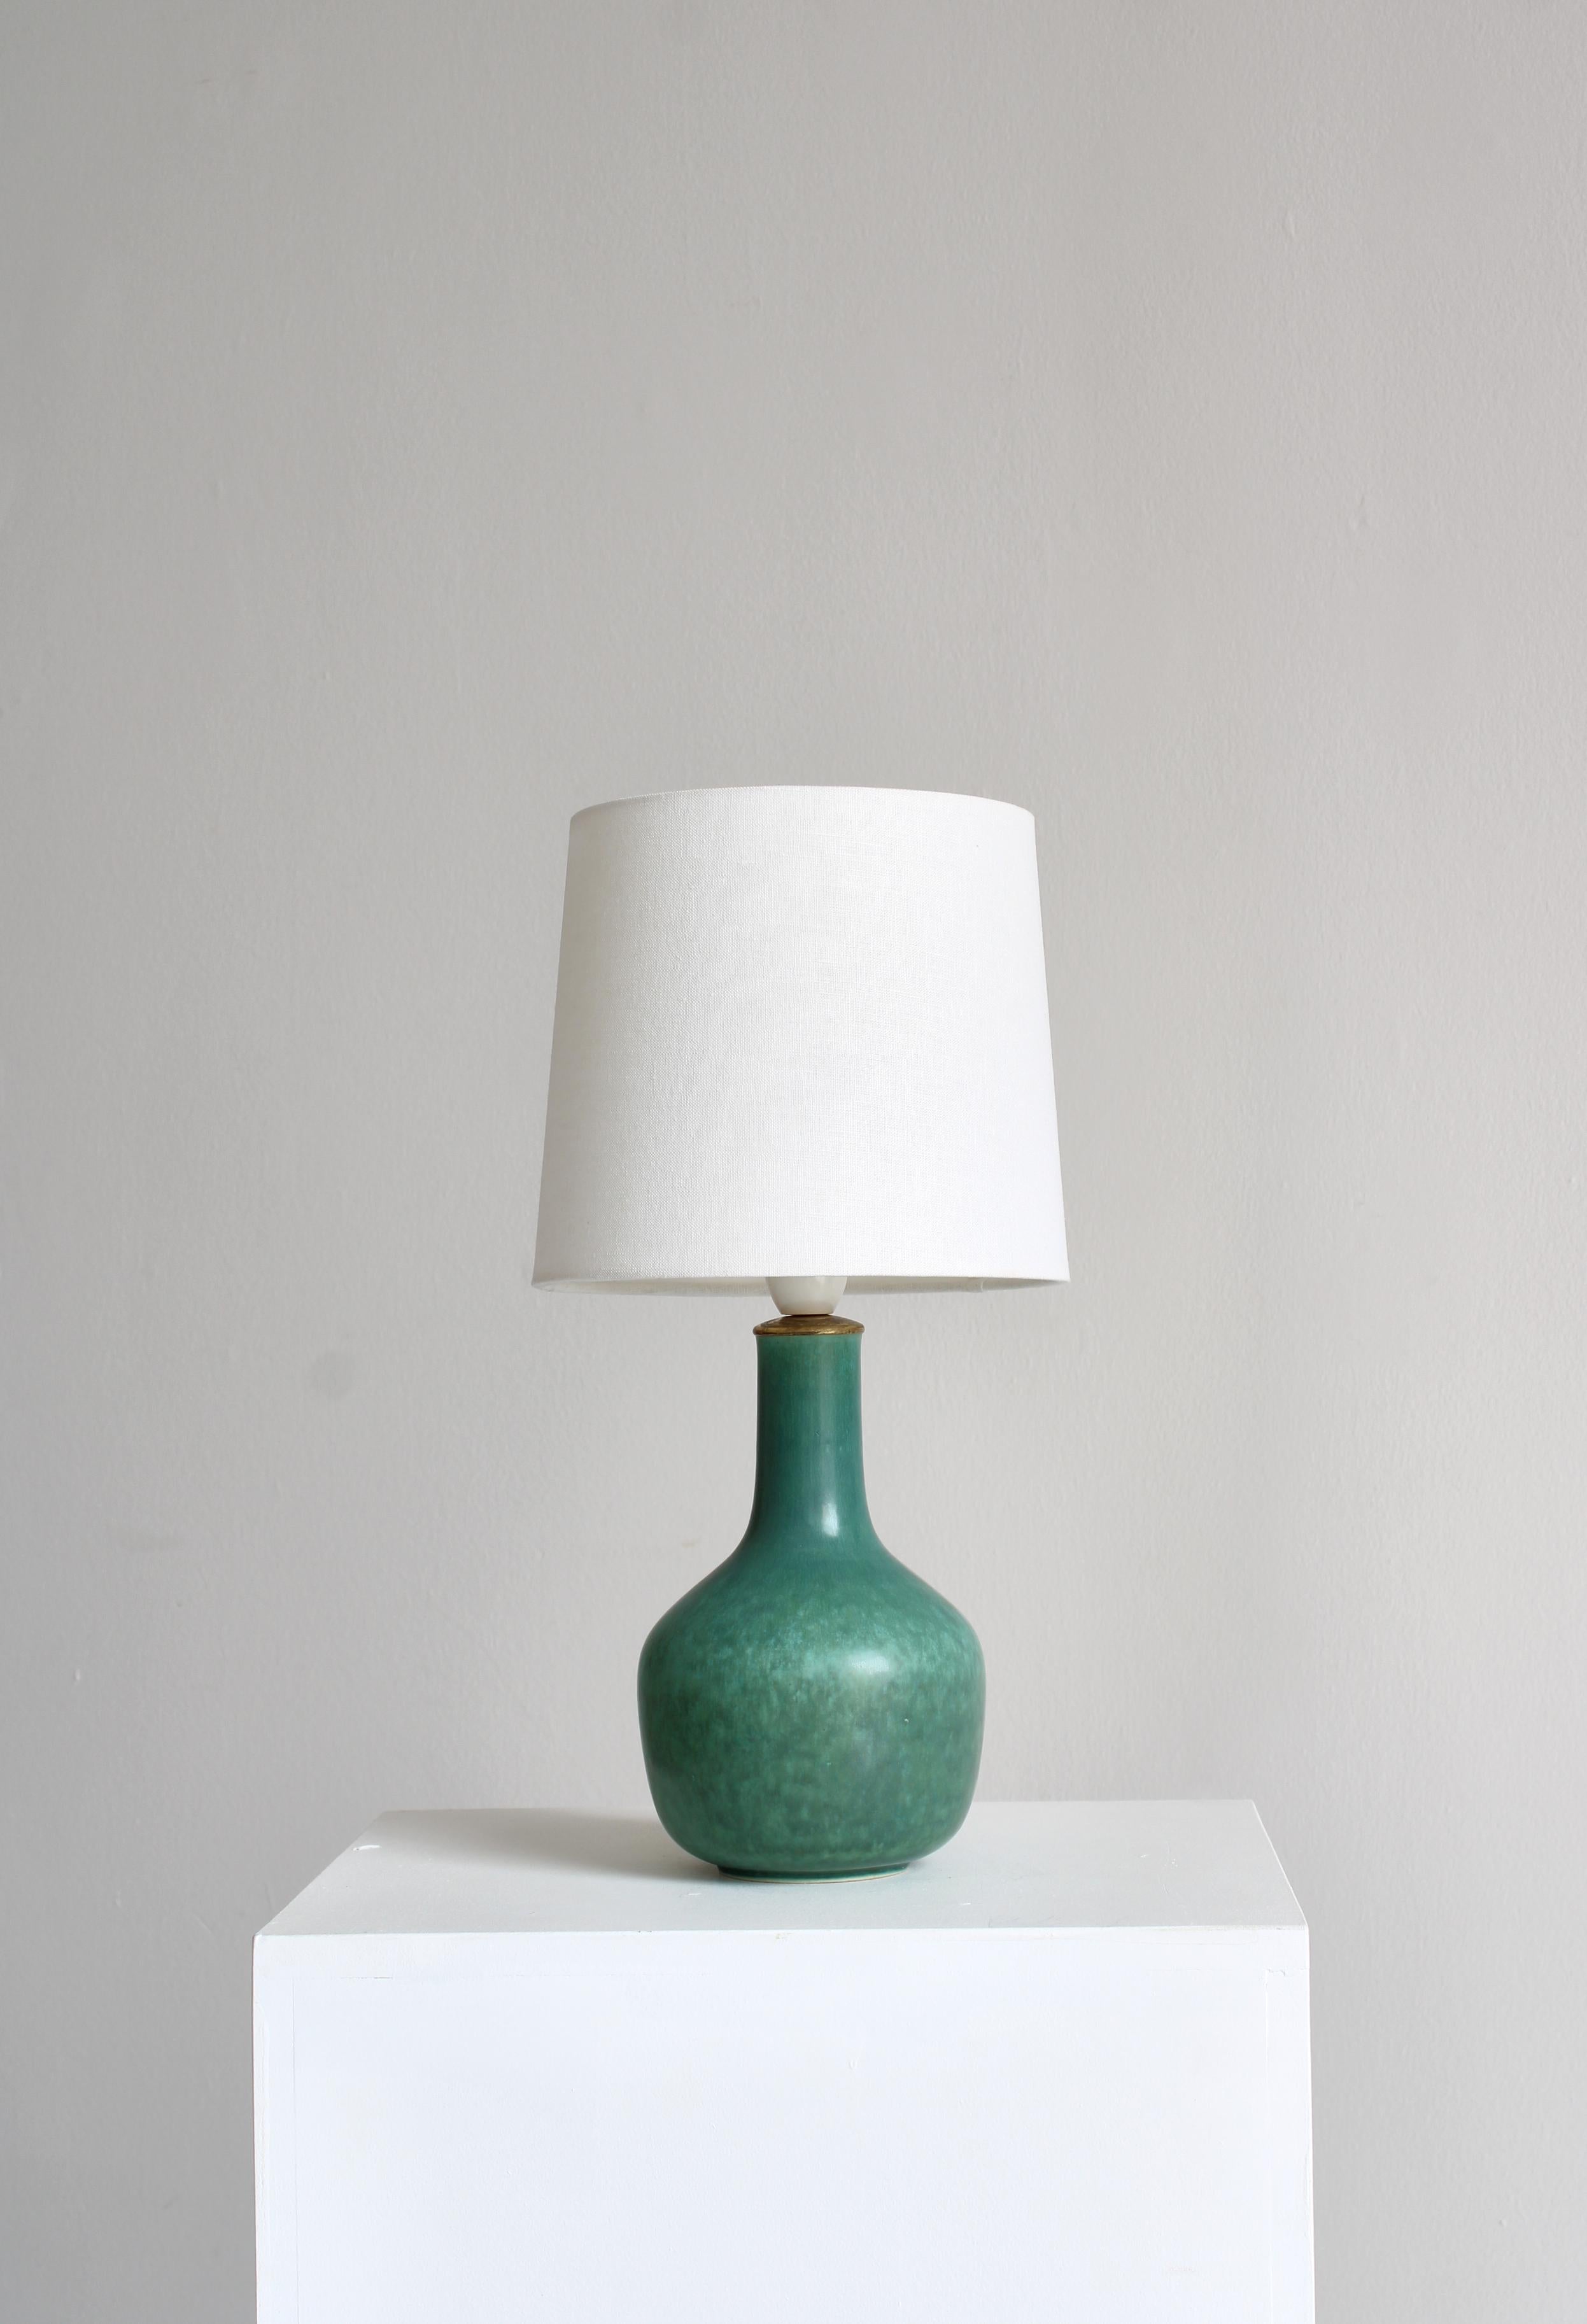 Rare lampe de table en grès modèle 469 de la poterie Saxbo, Danemark. Fabriquée par Eva Staehr-Nielsen dans les années 1940 et décorée d'un merveilleux glaçage vert en forme de lièvre. Monture originale en laiton et bakélite. Signé 